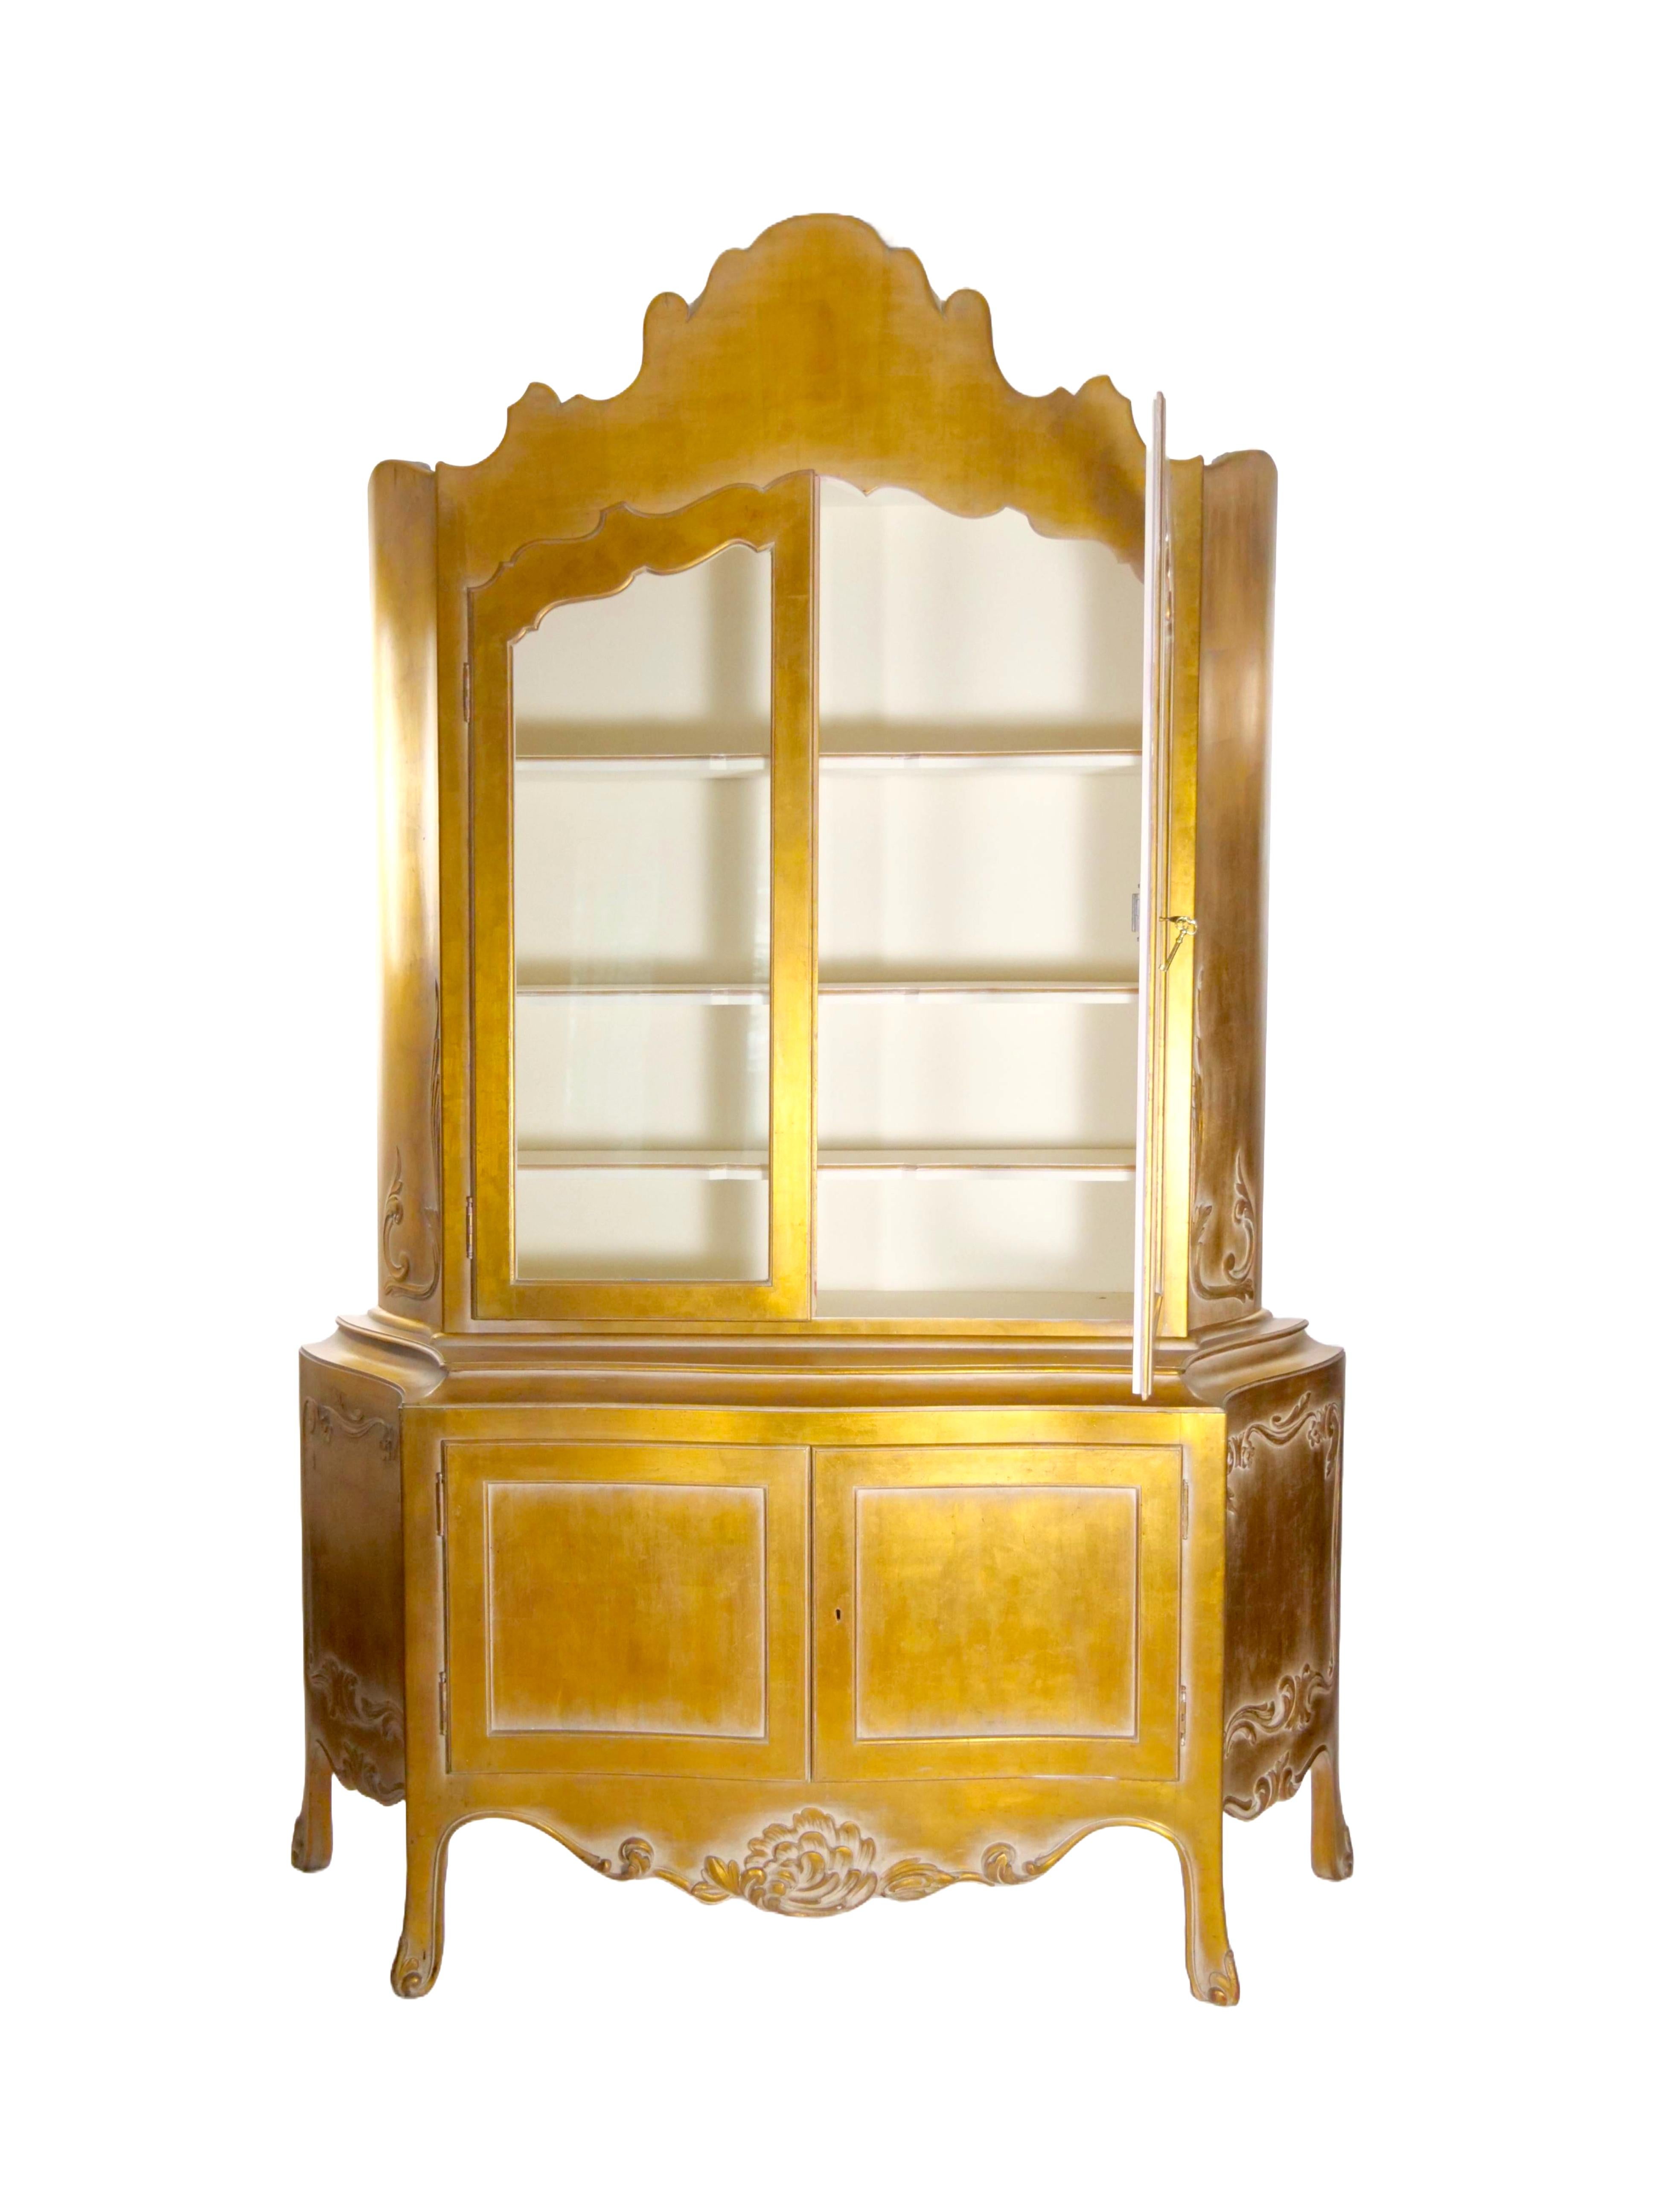 Rehaussez votre espace de vie avec notre vitrine en deux parties en bois italien du milieu du 20e siècle sculpté à la main et doré à l'extérieur - un véritable témoignage de l'artisanat et du design intemporel. Ce meuble exquis présente des détails